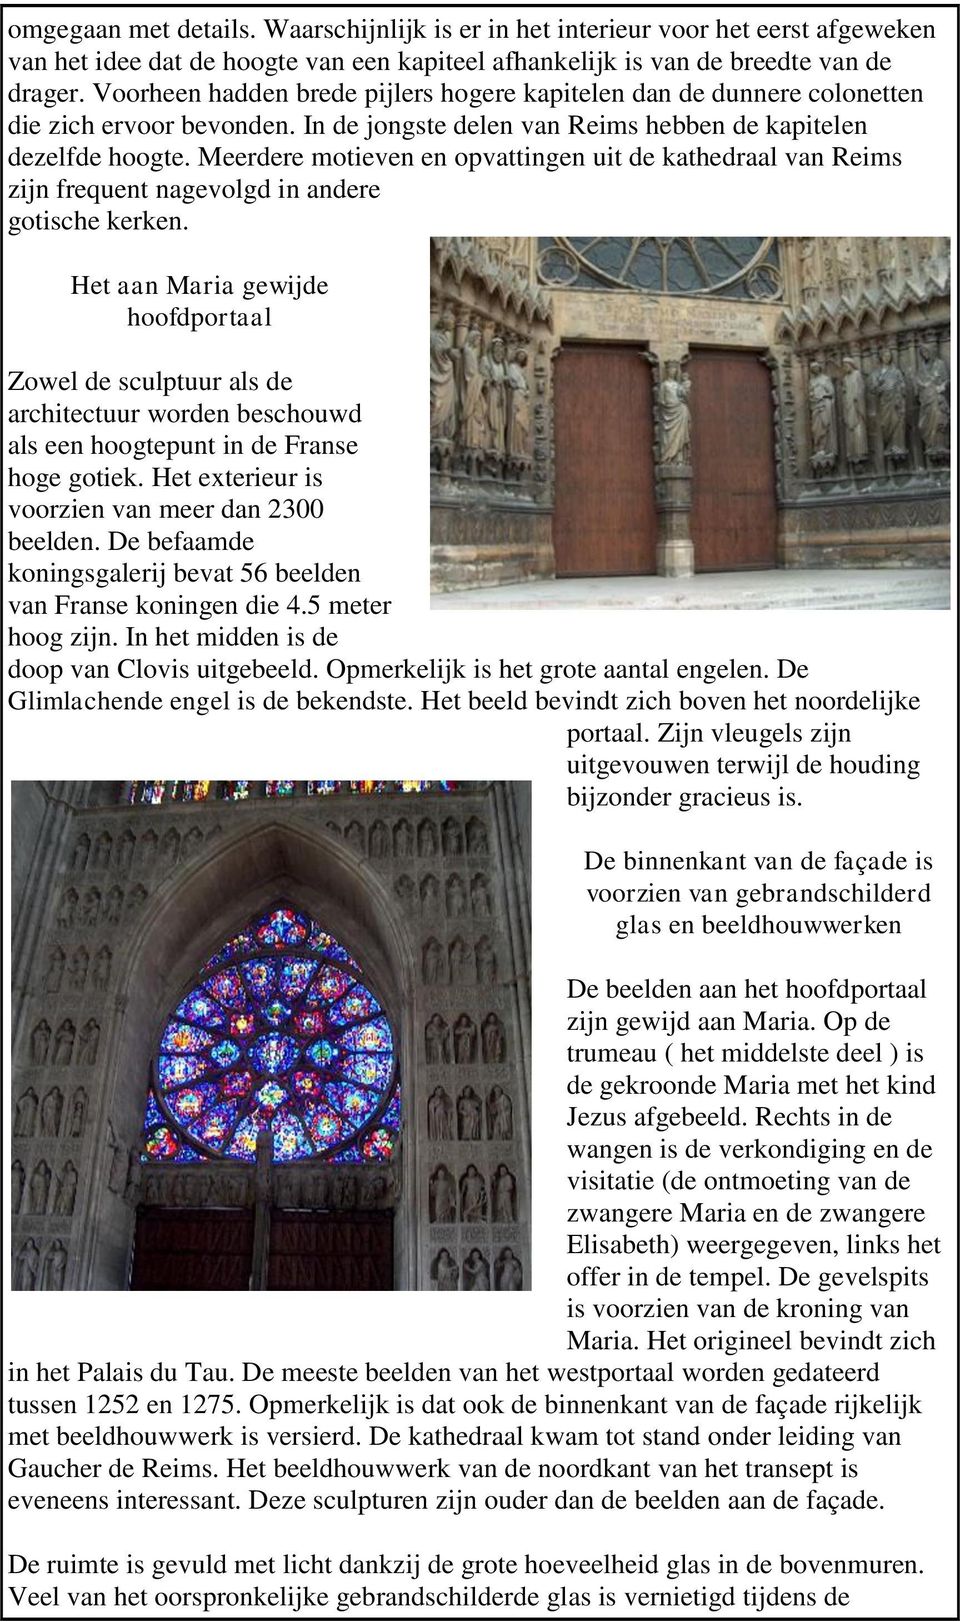 Meerdere motieven en opvattingen uit de kathedraal van Reims zijn frequent nagevolgd in andere gotische kerken.